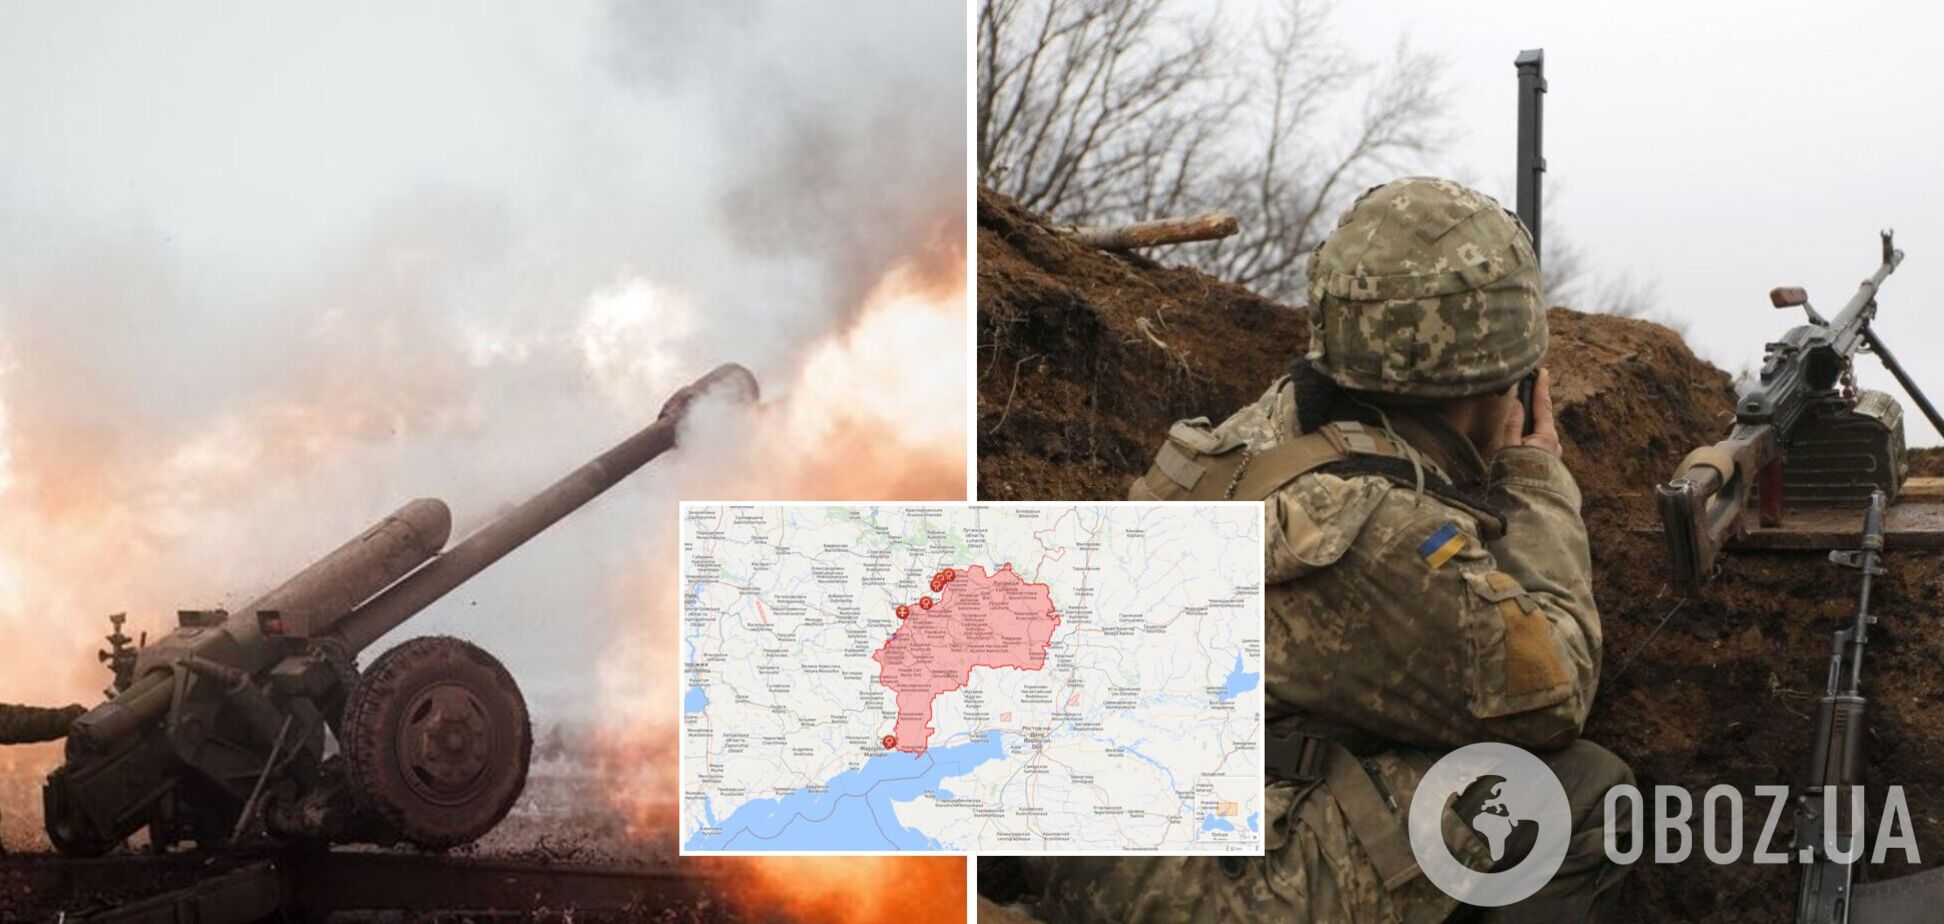 Оккупанты РФ на Донбассе накрыли ВСУ из крупнокалиберной артиллерии, есть раненый